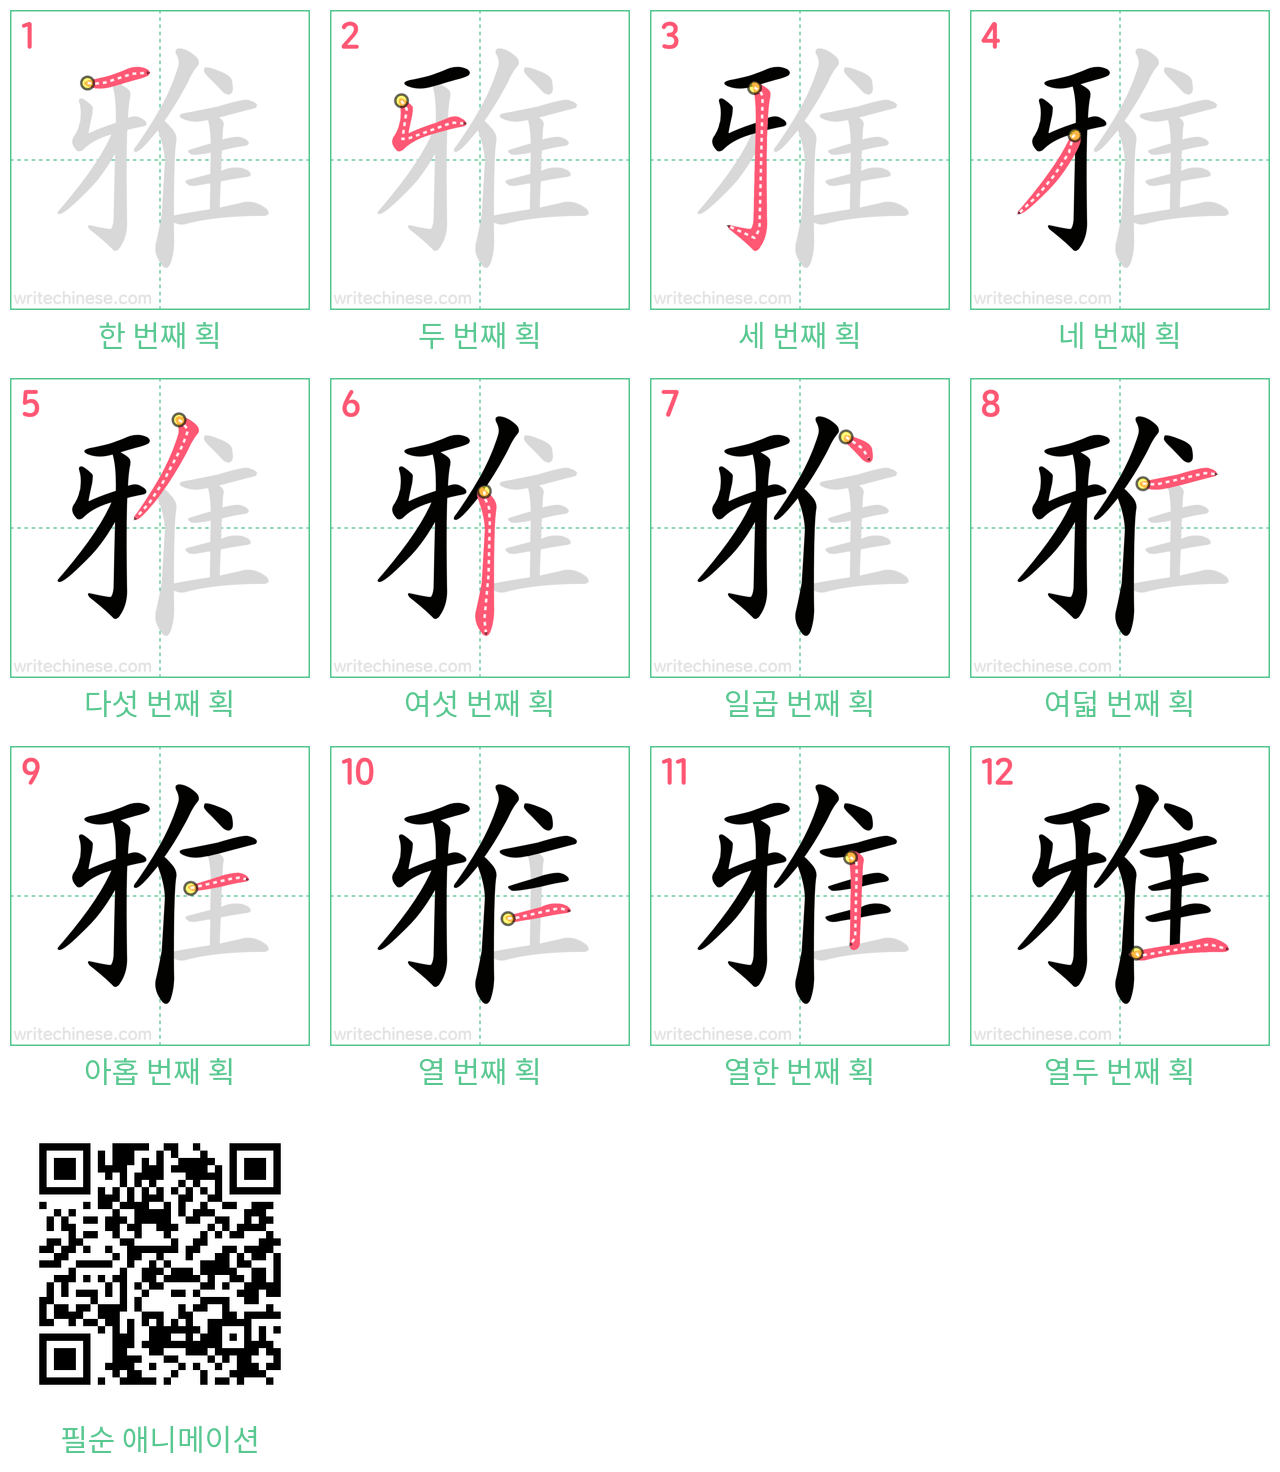 雅 step-by-step stroke order diagrams